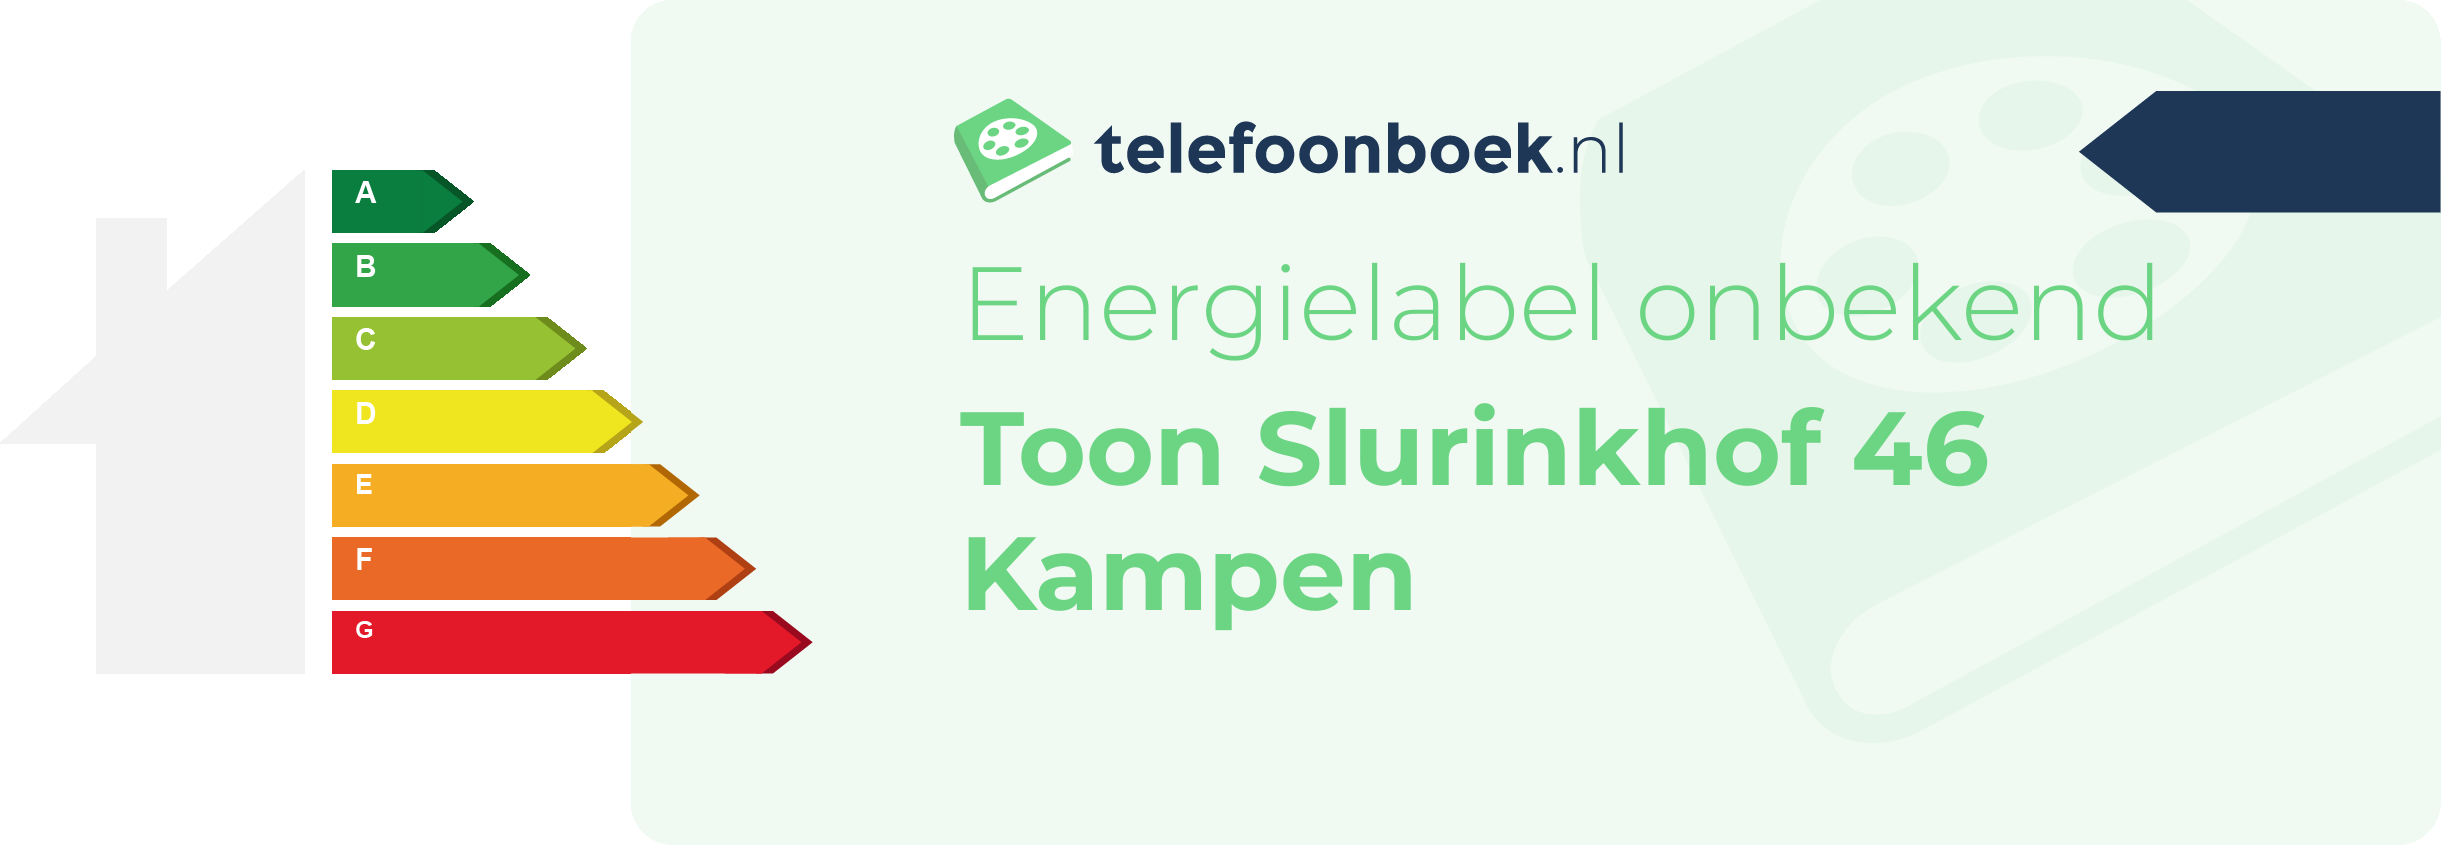 Energielabel Toon Slurinkhof 46 Kampen